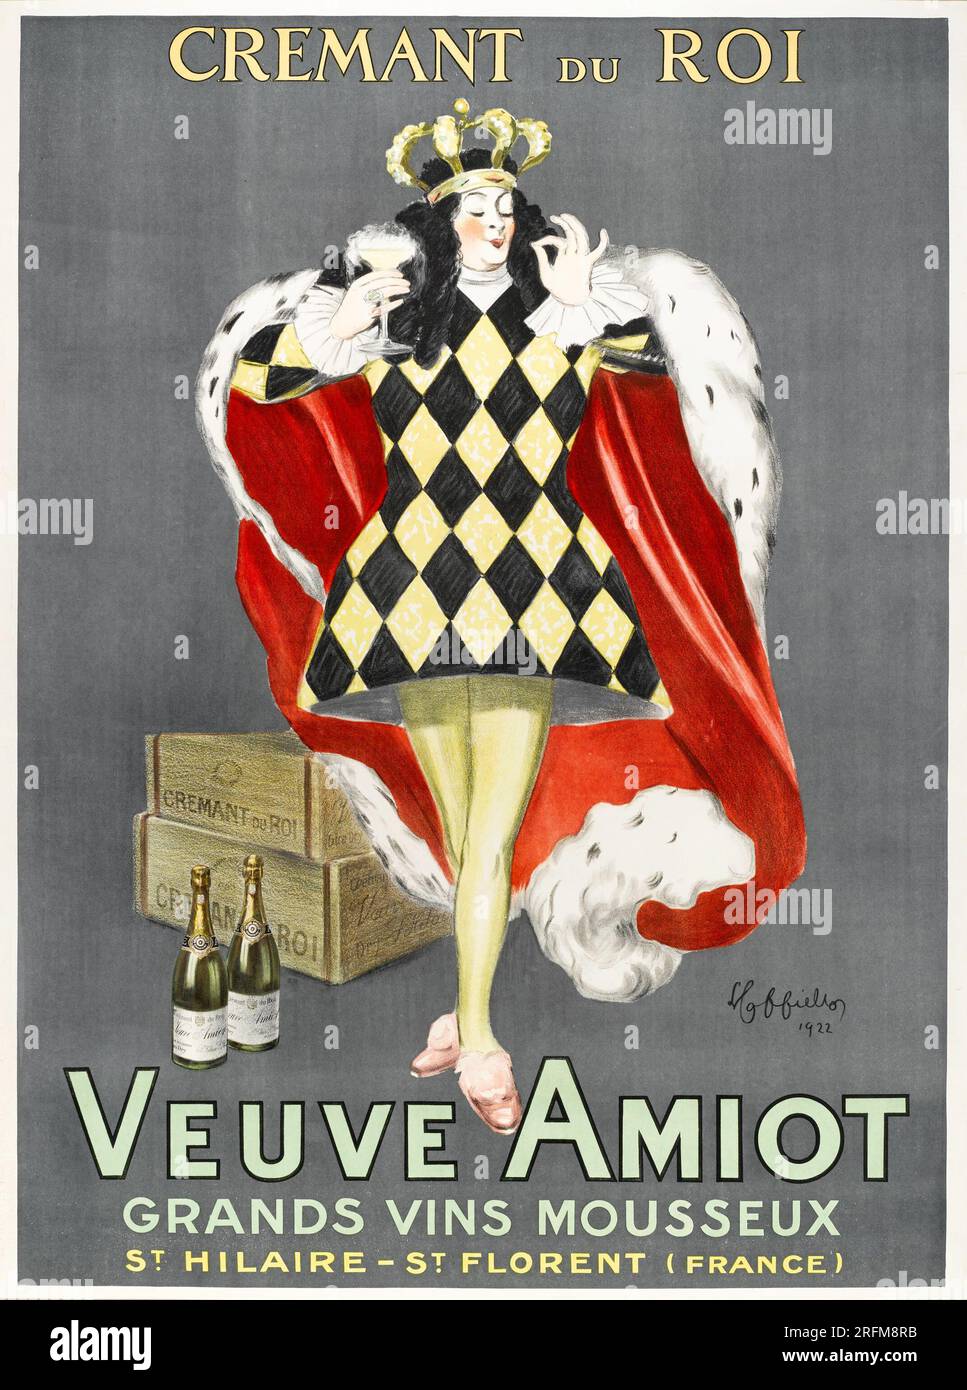 Veuve Amiot, Grands Vins Mousseux, Vintage advertisement poster by Leonetto Cappiello 1922 Stock Photo